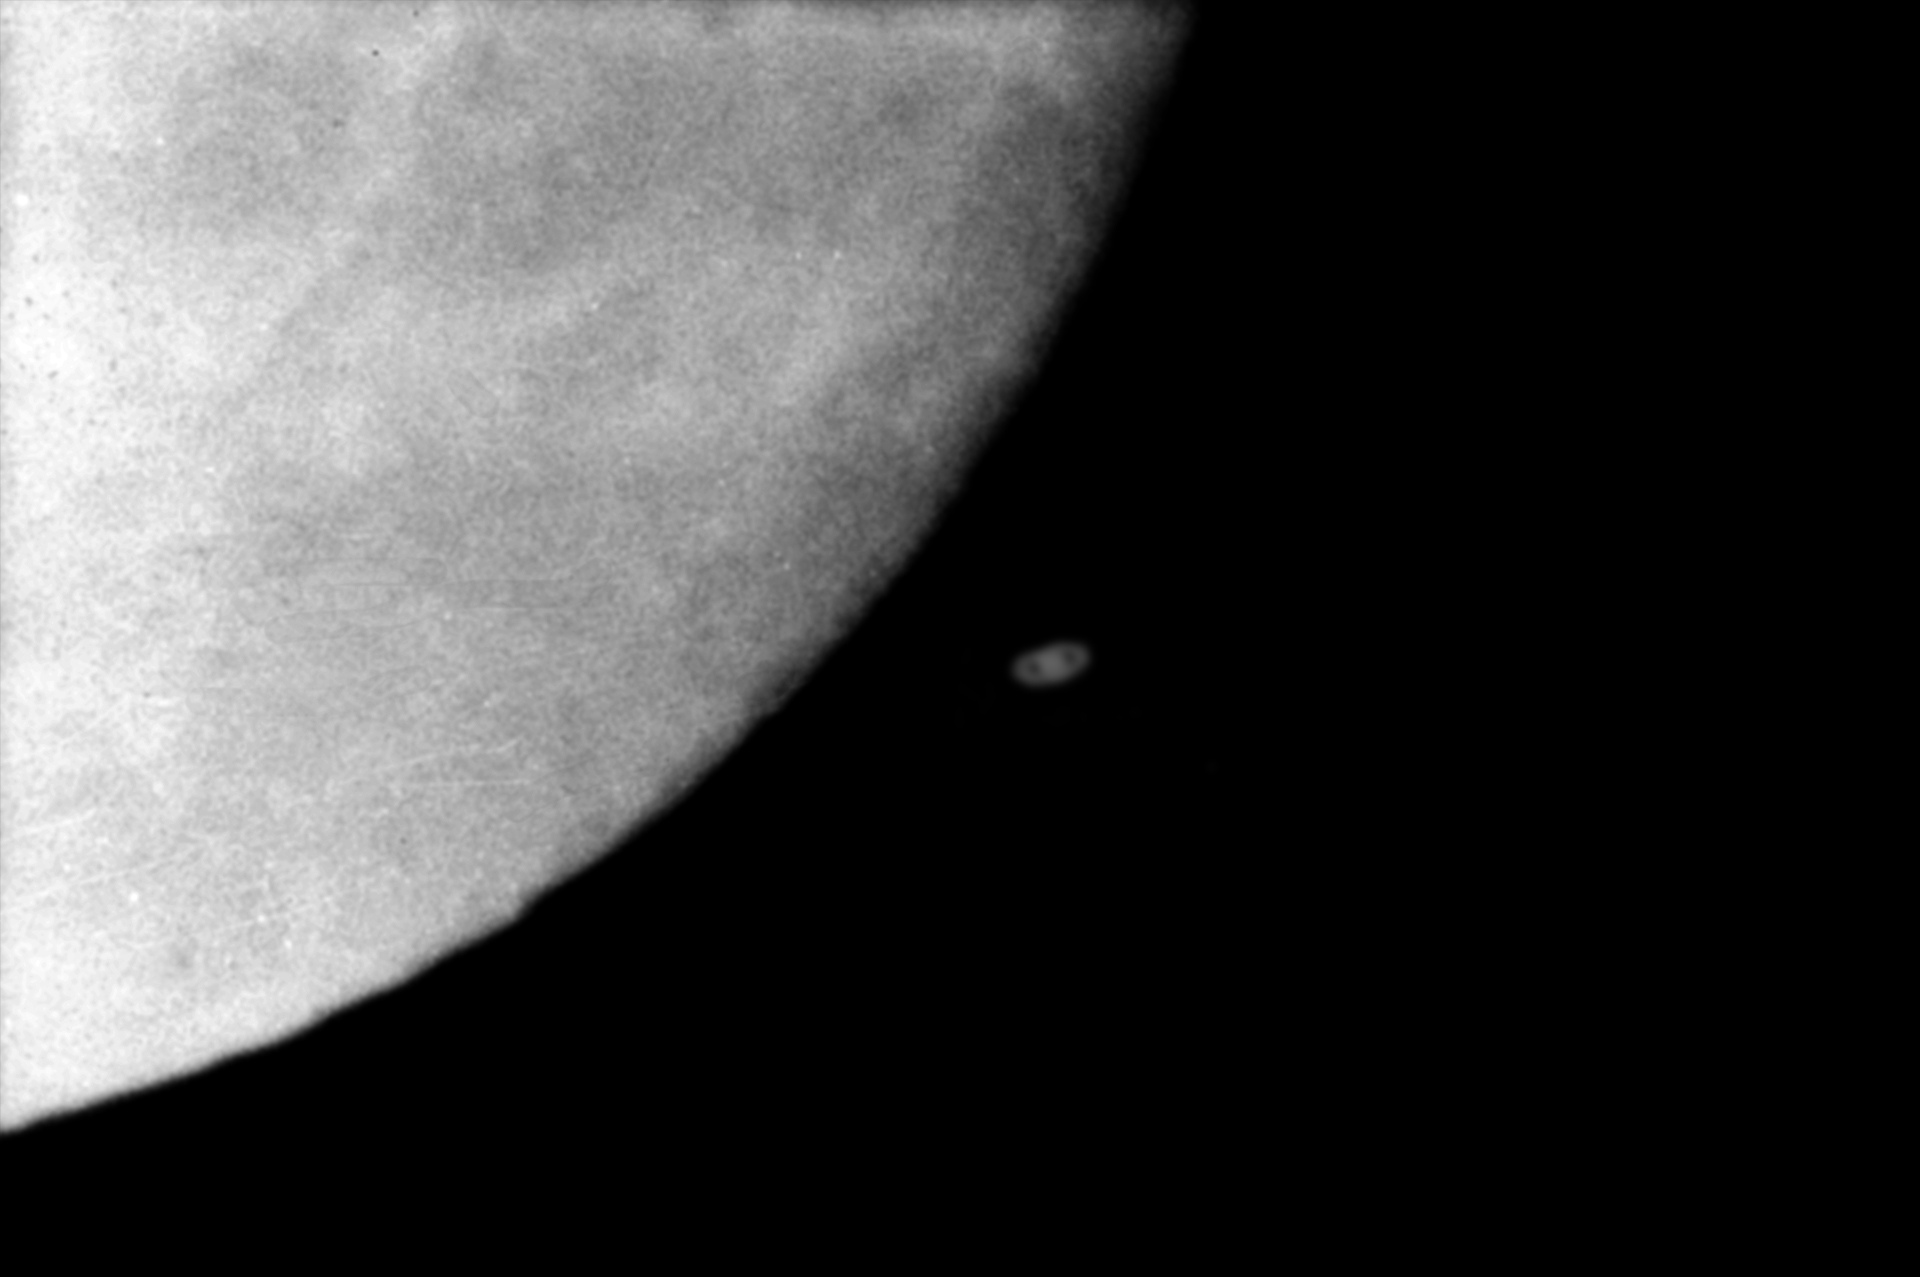 5e7ce264ed37e_Saturne-Lune11-12-1973.jpg.ee7f39aa8c7d2a55e5b7819a101cb091.jpg